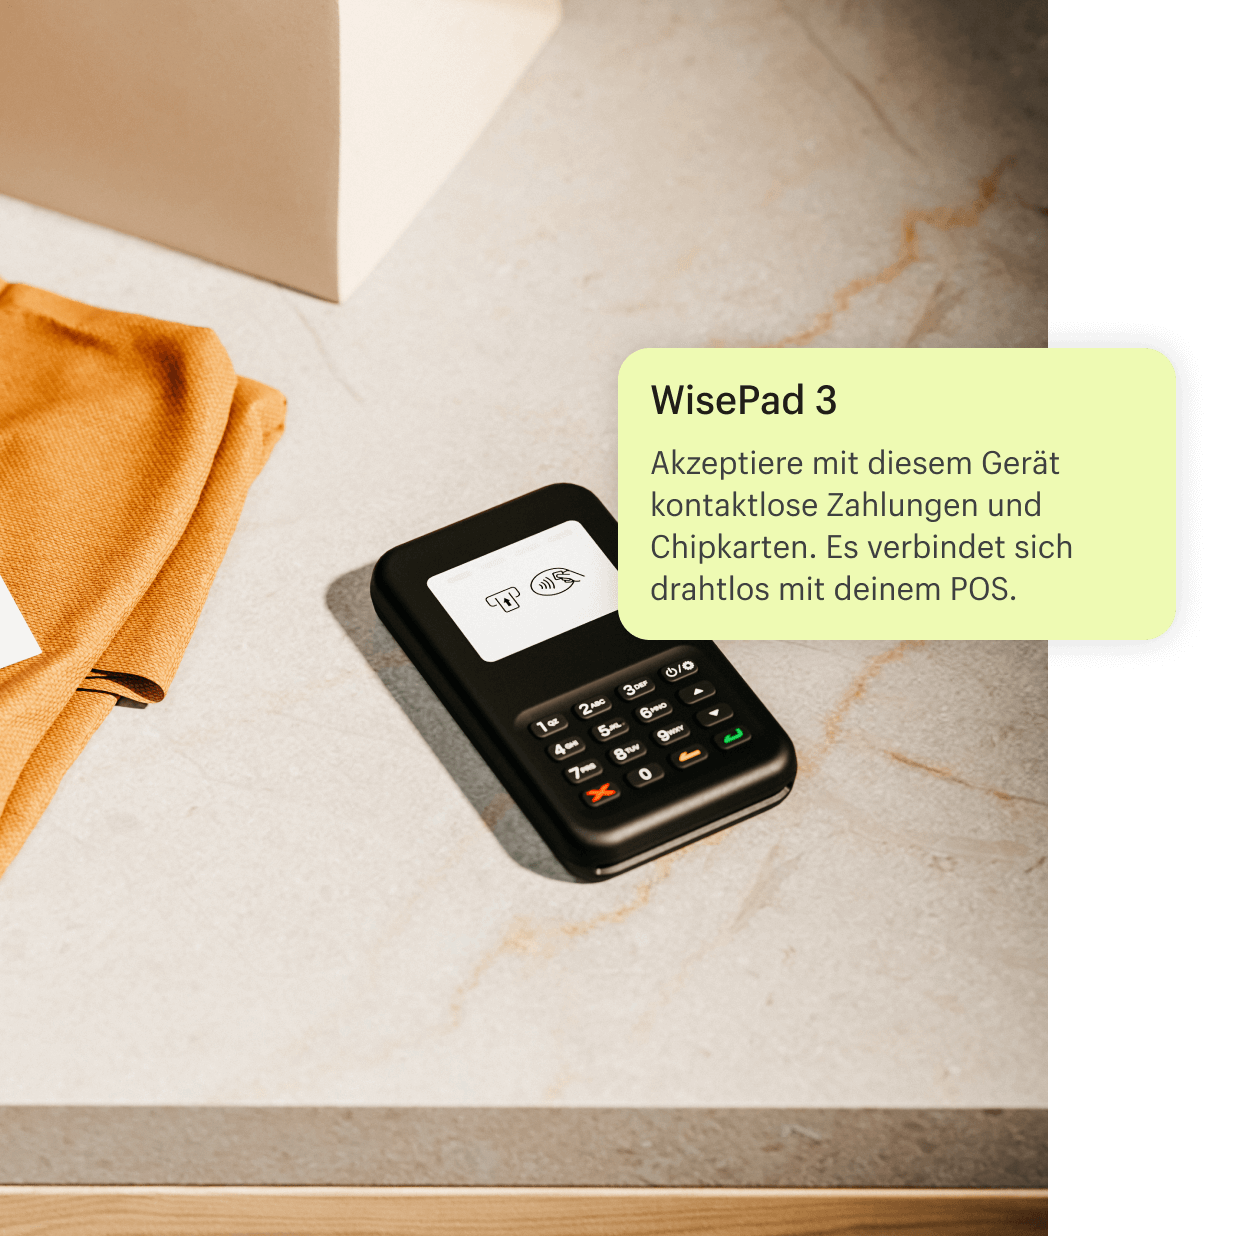 Ein Bild des WisePad 3-Geräts, das nach Abschluss einer Transaktion mit einem Kunden bzw. einer Kundin auf dem Kassentisch liegt. Das WisePad 3 akzeptiert Transaktionen mit kontaktloser Zahlung sowie Zahlungen per Chip und lässt sich drahtlos mit dem POS verbinden.